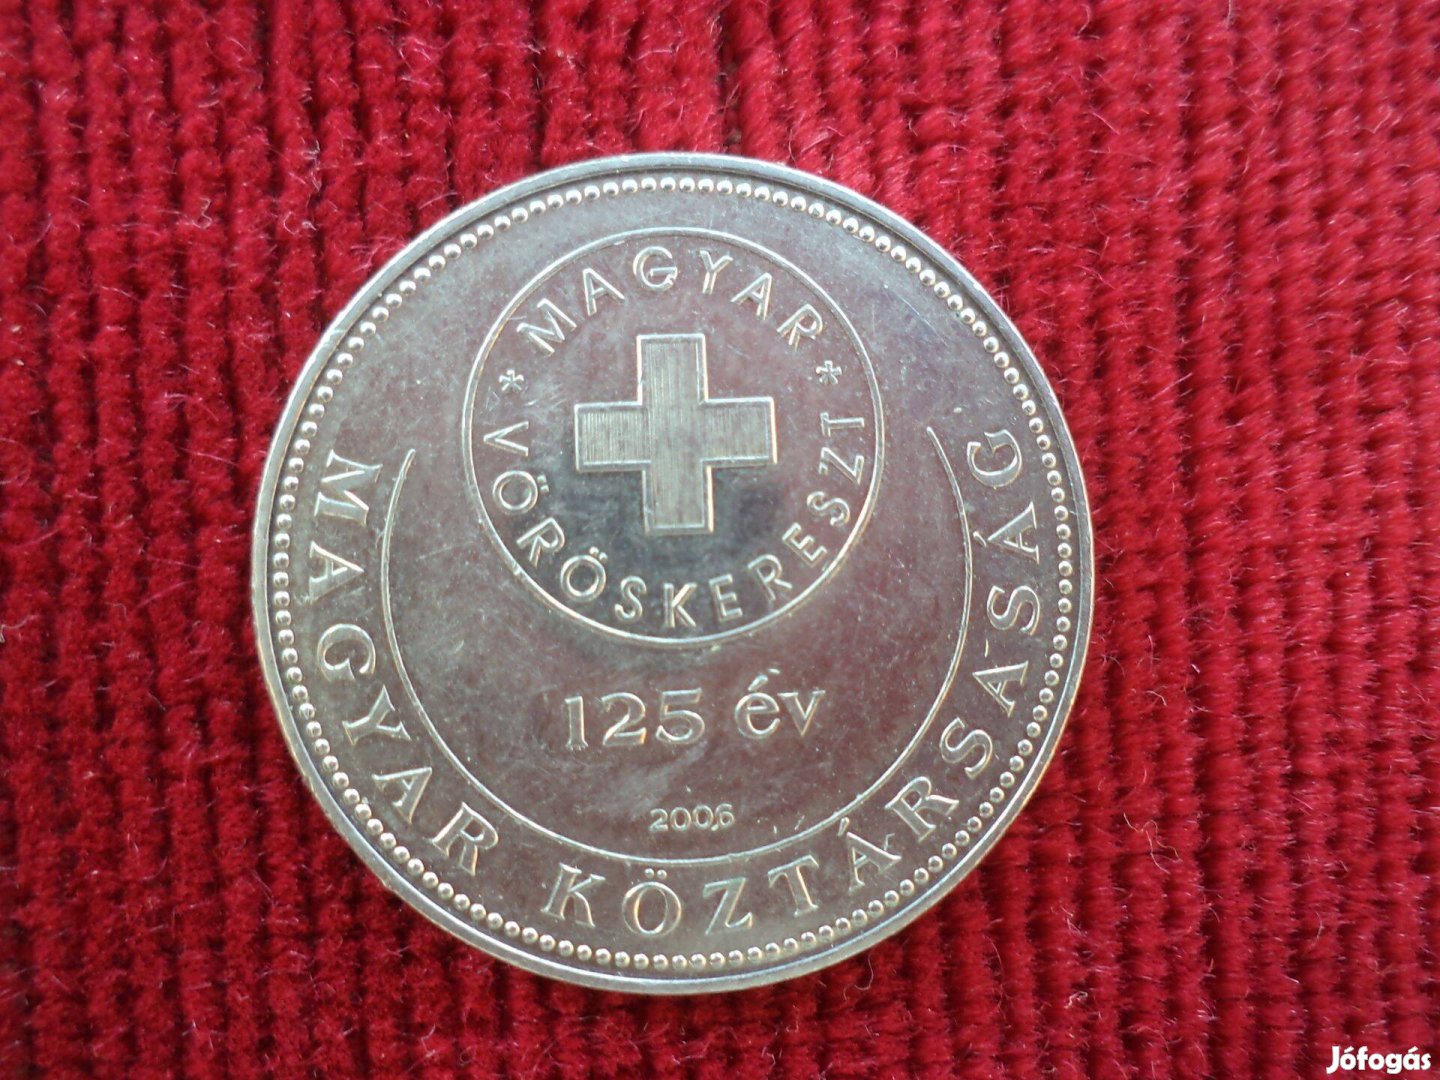 2006-ban kiadott 125 éves a Magyar Vöröskereszt 50 Ft-os érme eladó